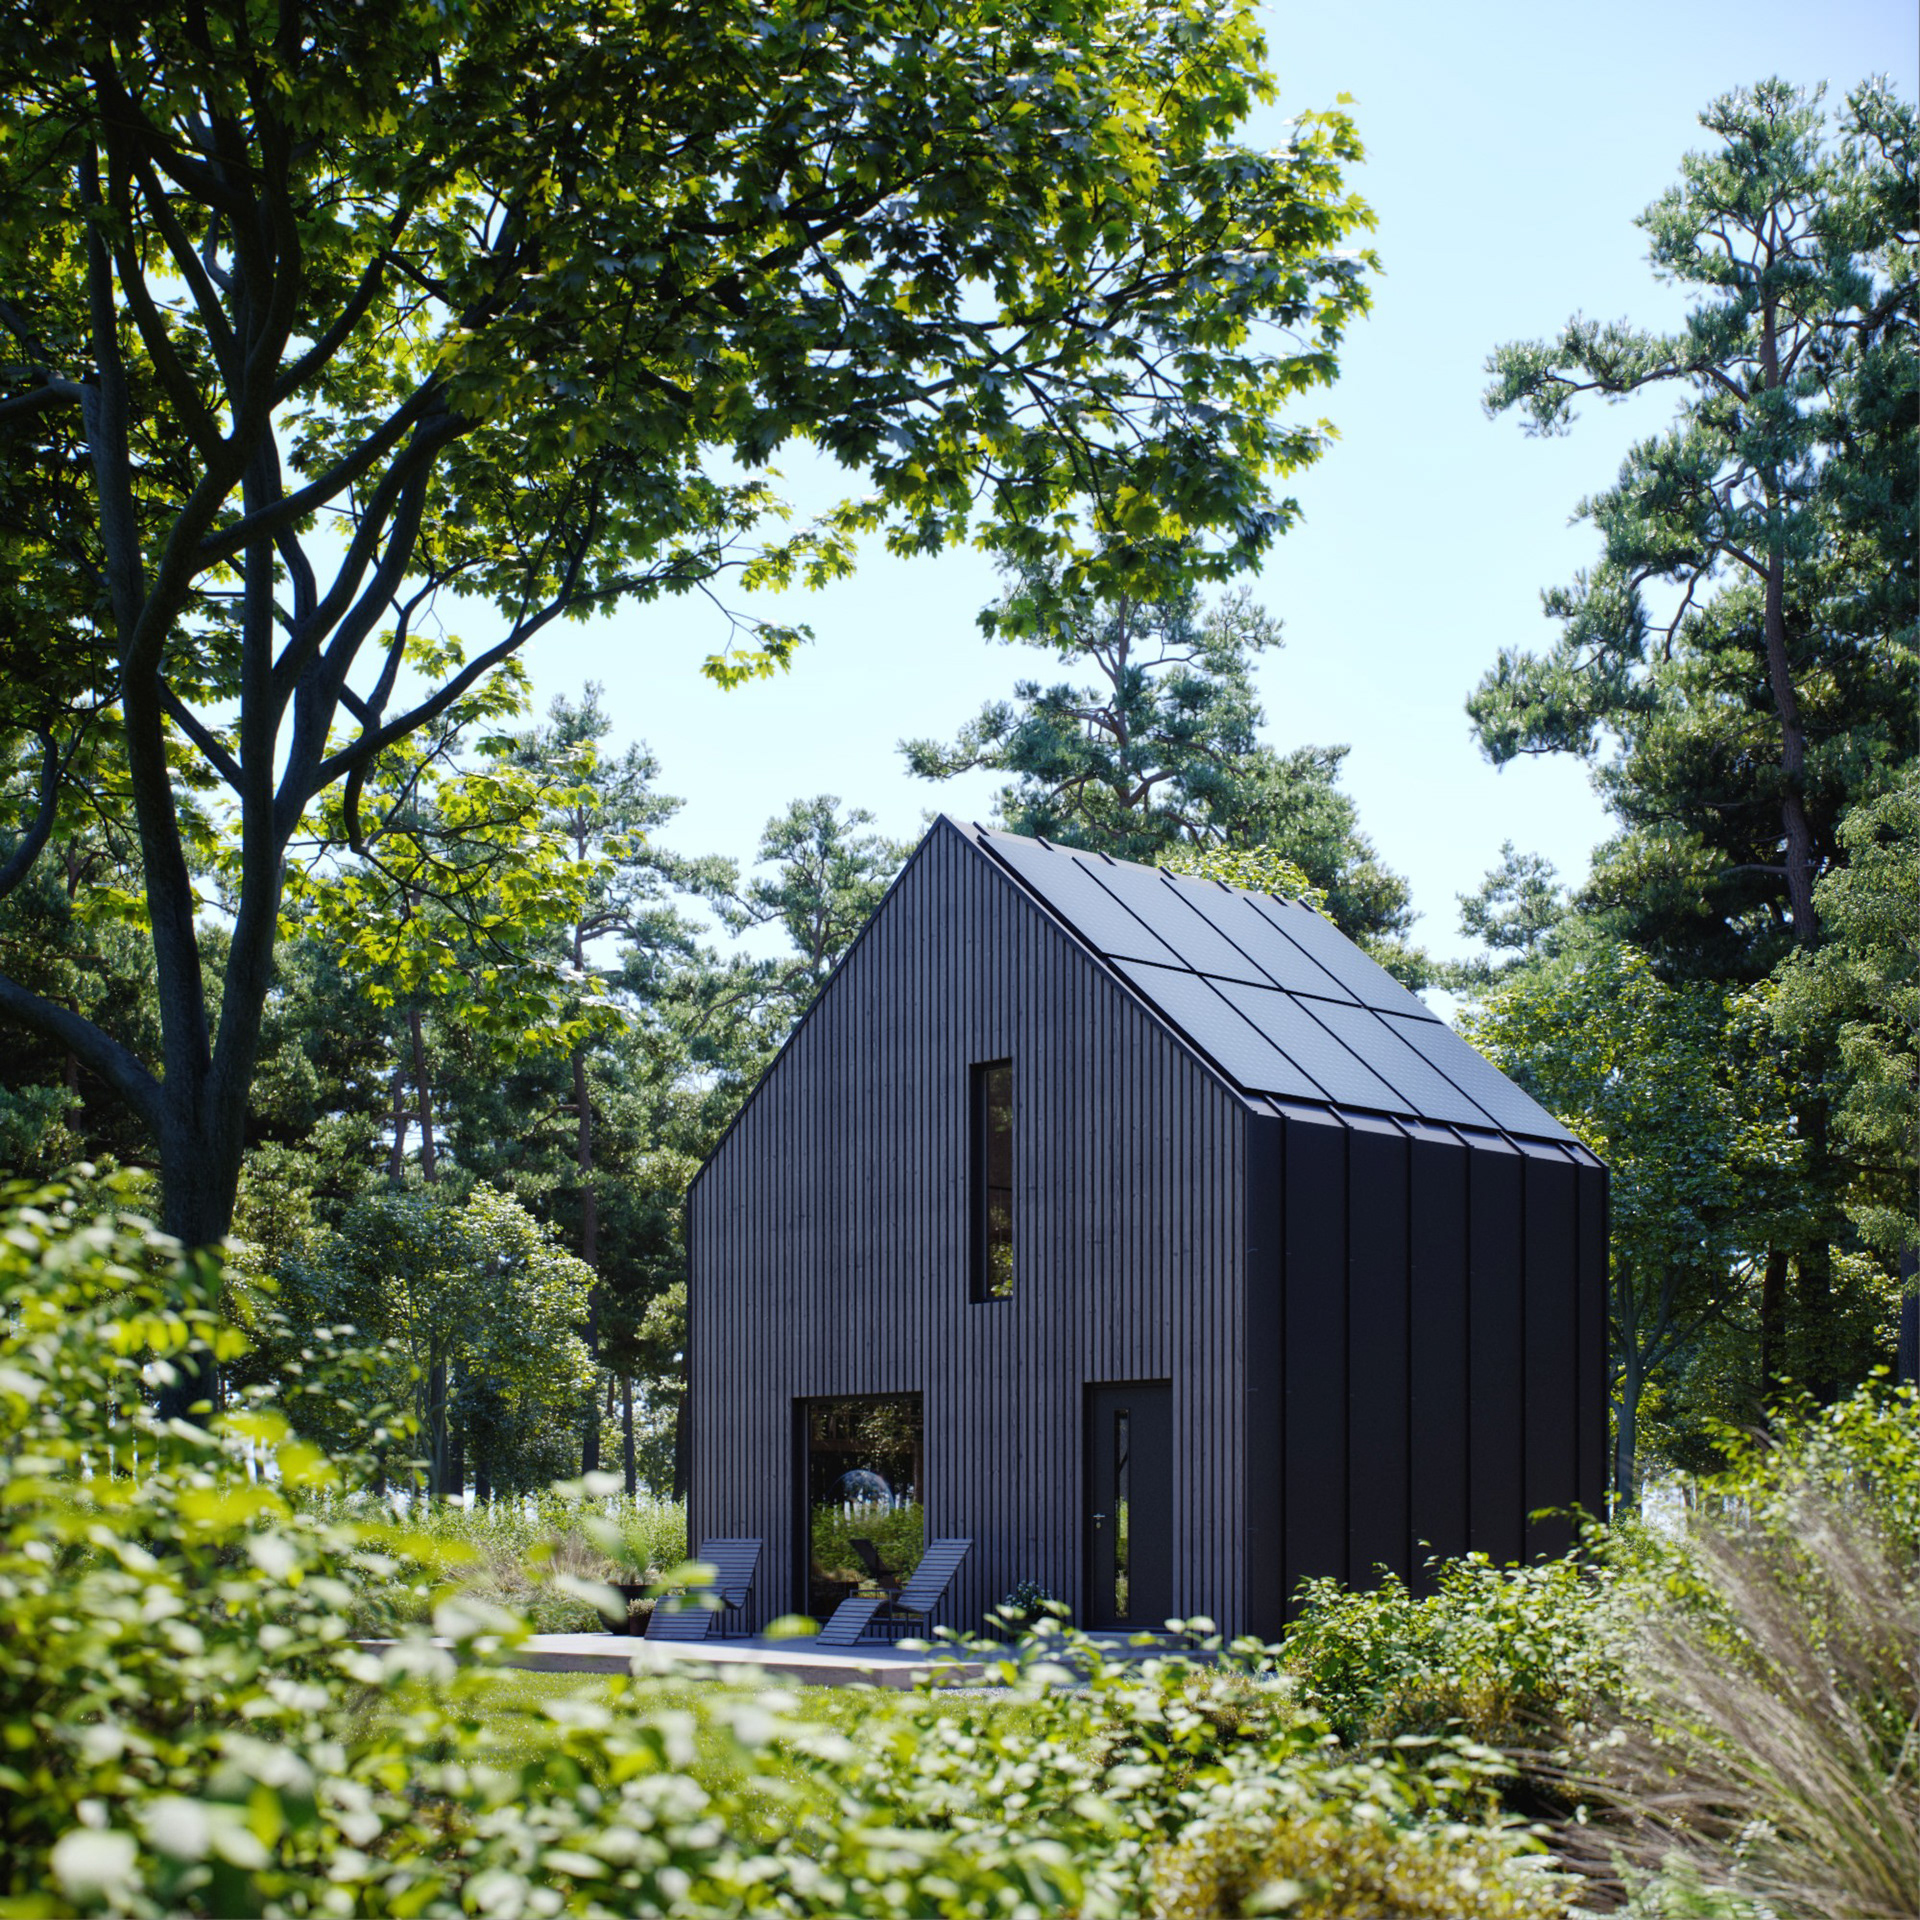 Modulo House - Small House, Big Idea